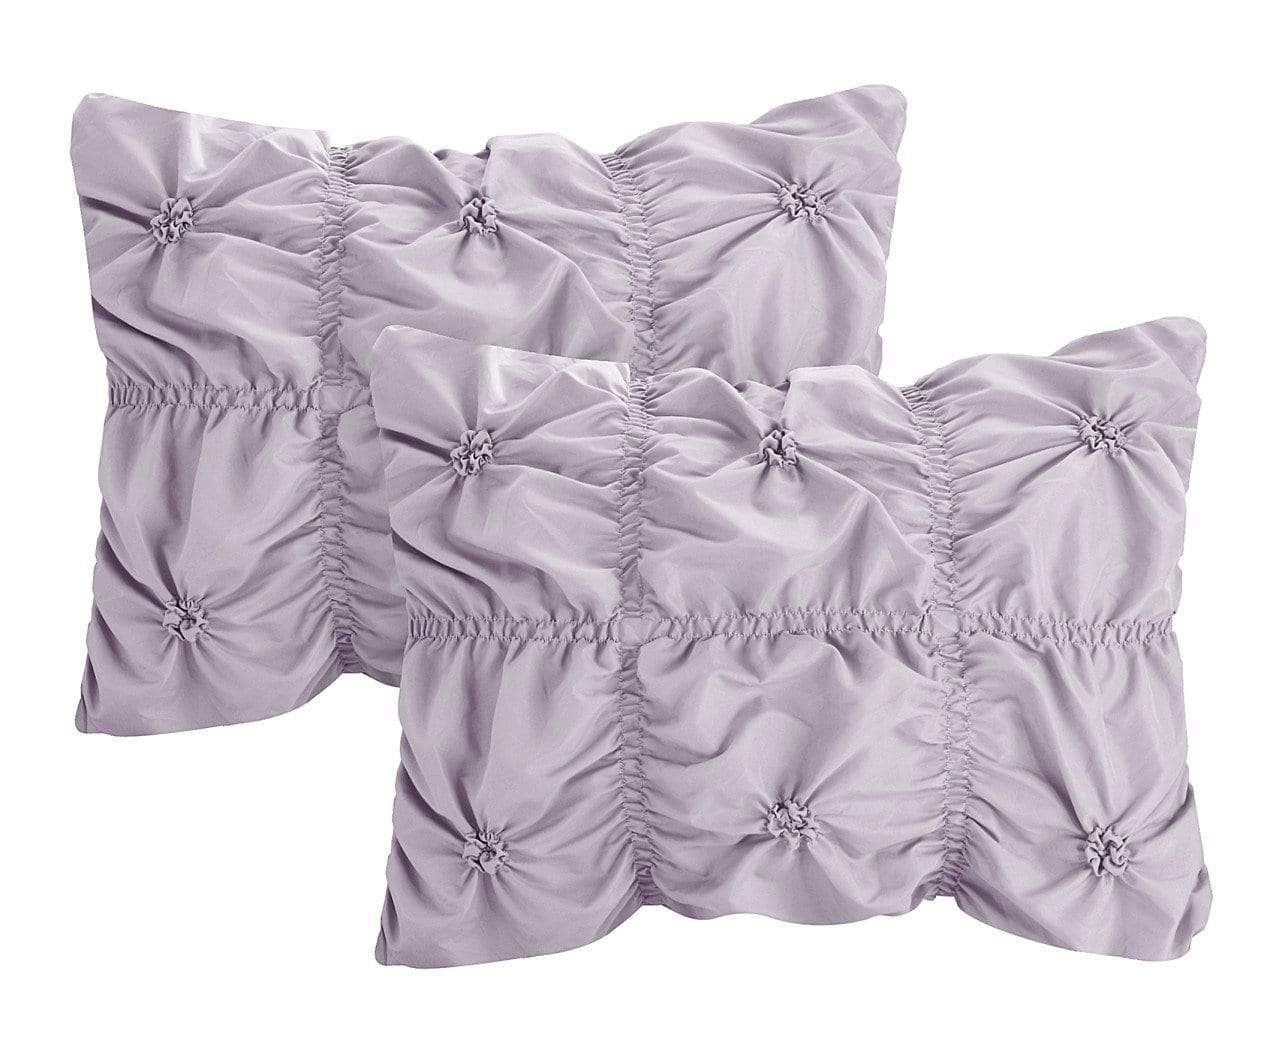 Halpert 6 Piece Floral Comforter Set